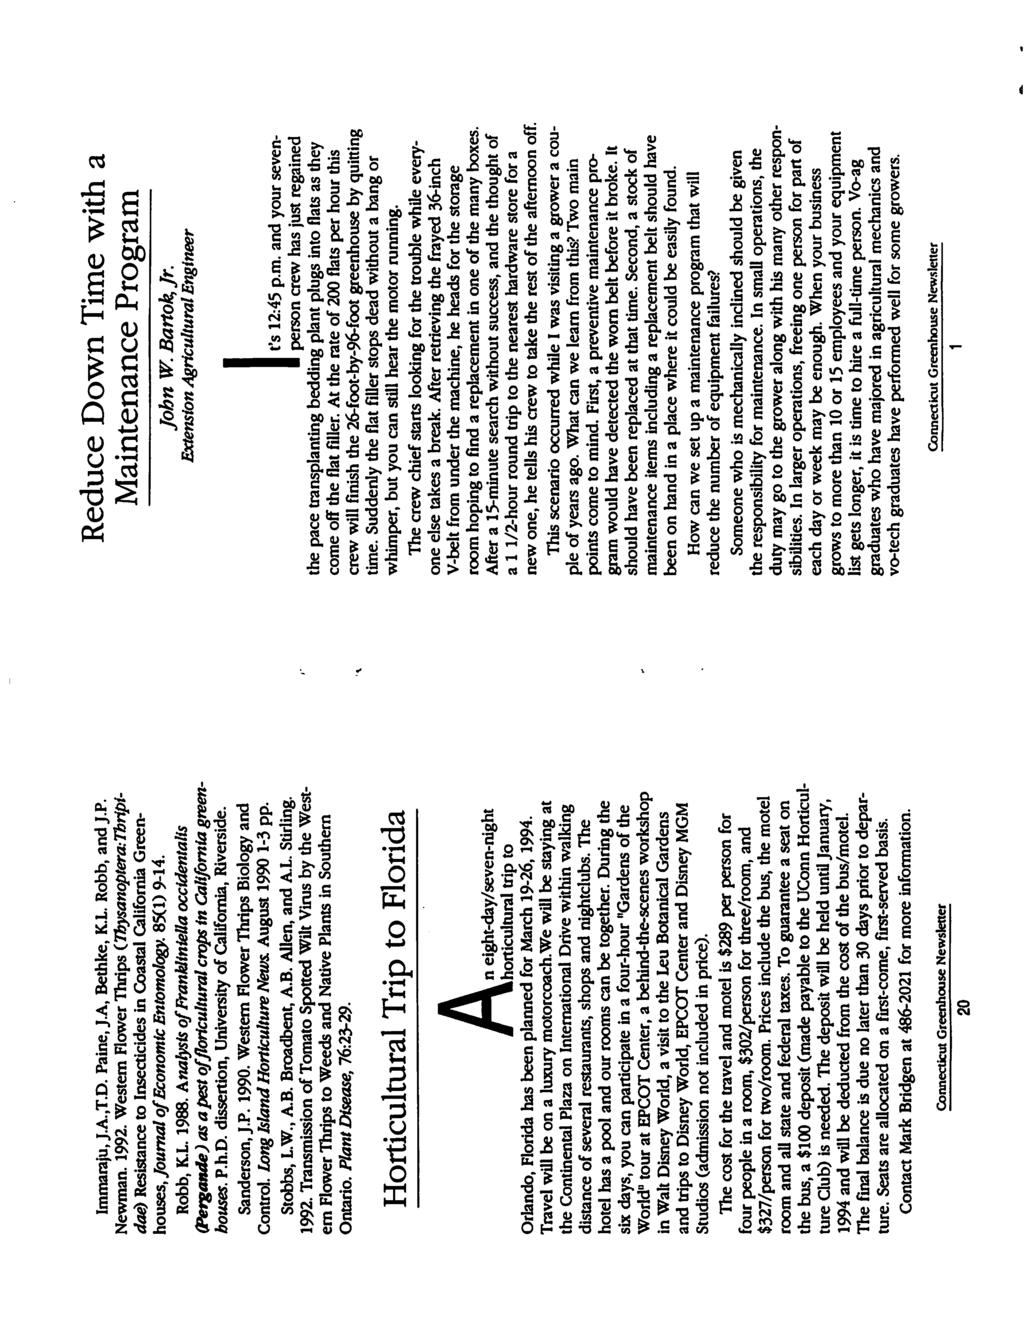 Immaraju, J.A..T.D. Paine, J.A, Bethke, K.L. Robb, andj.p. Newman. 1992.